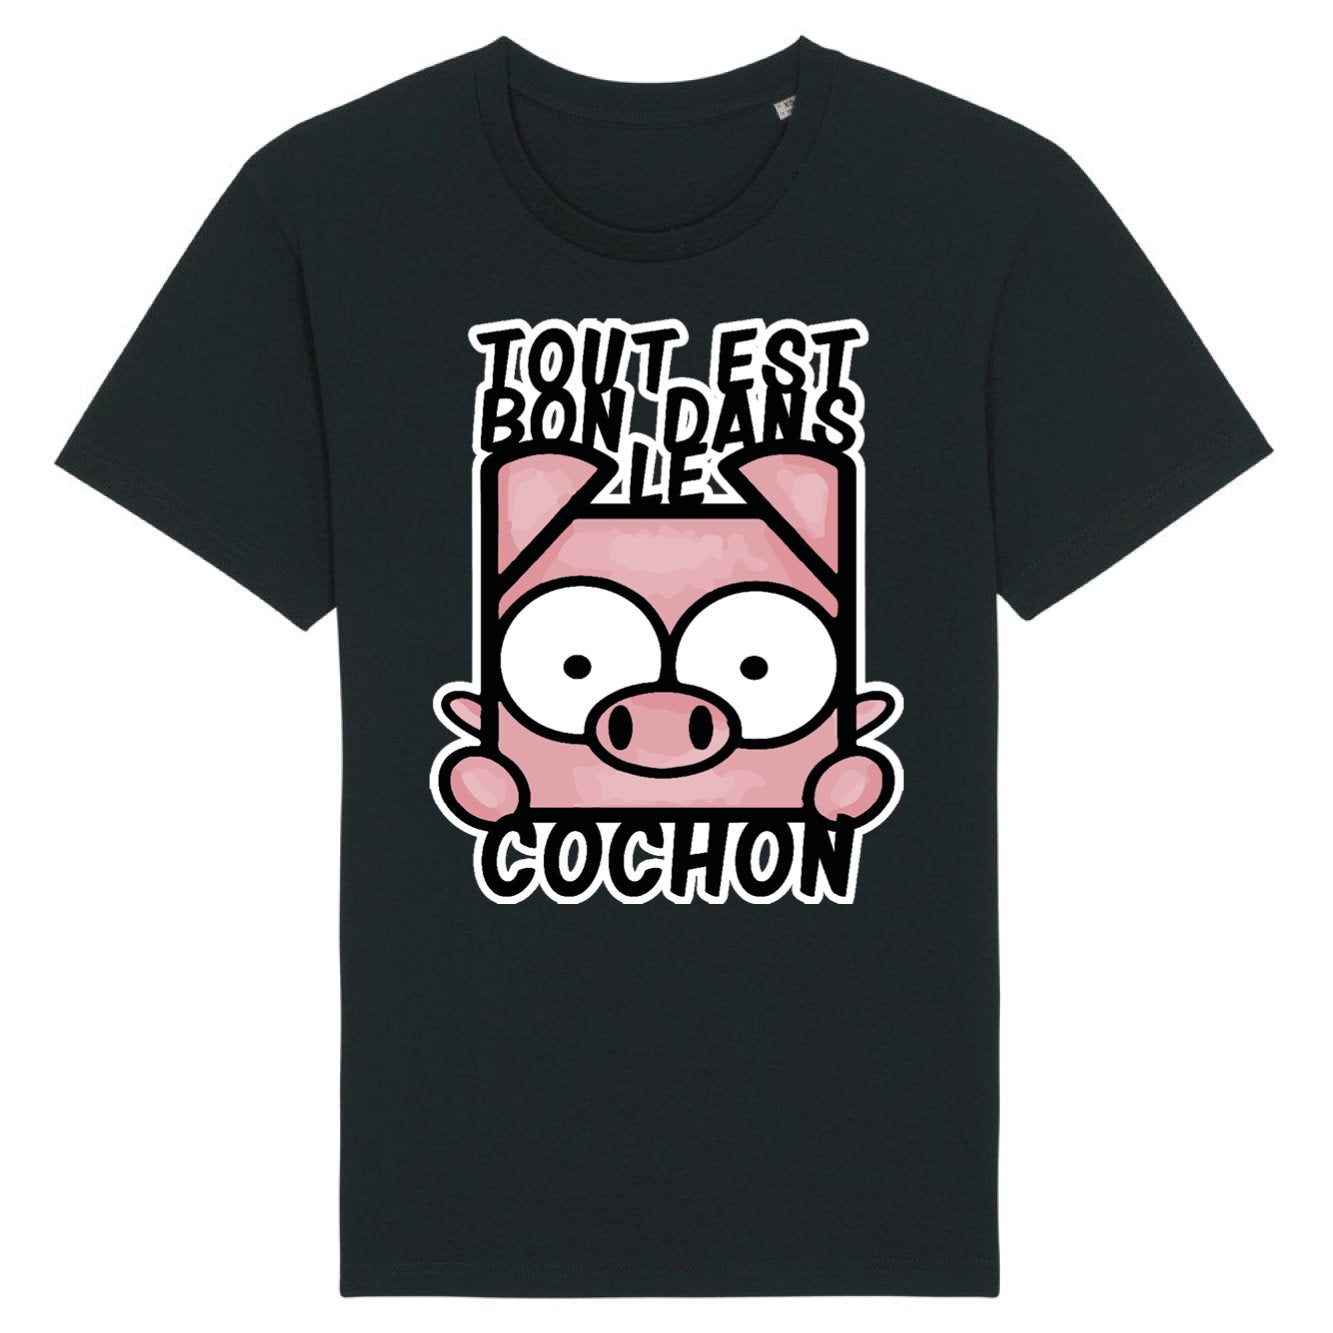 T-Shirt Homme Tout est bon dans le cochon 